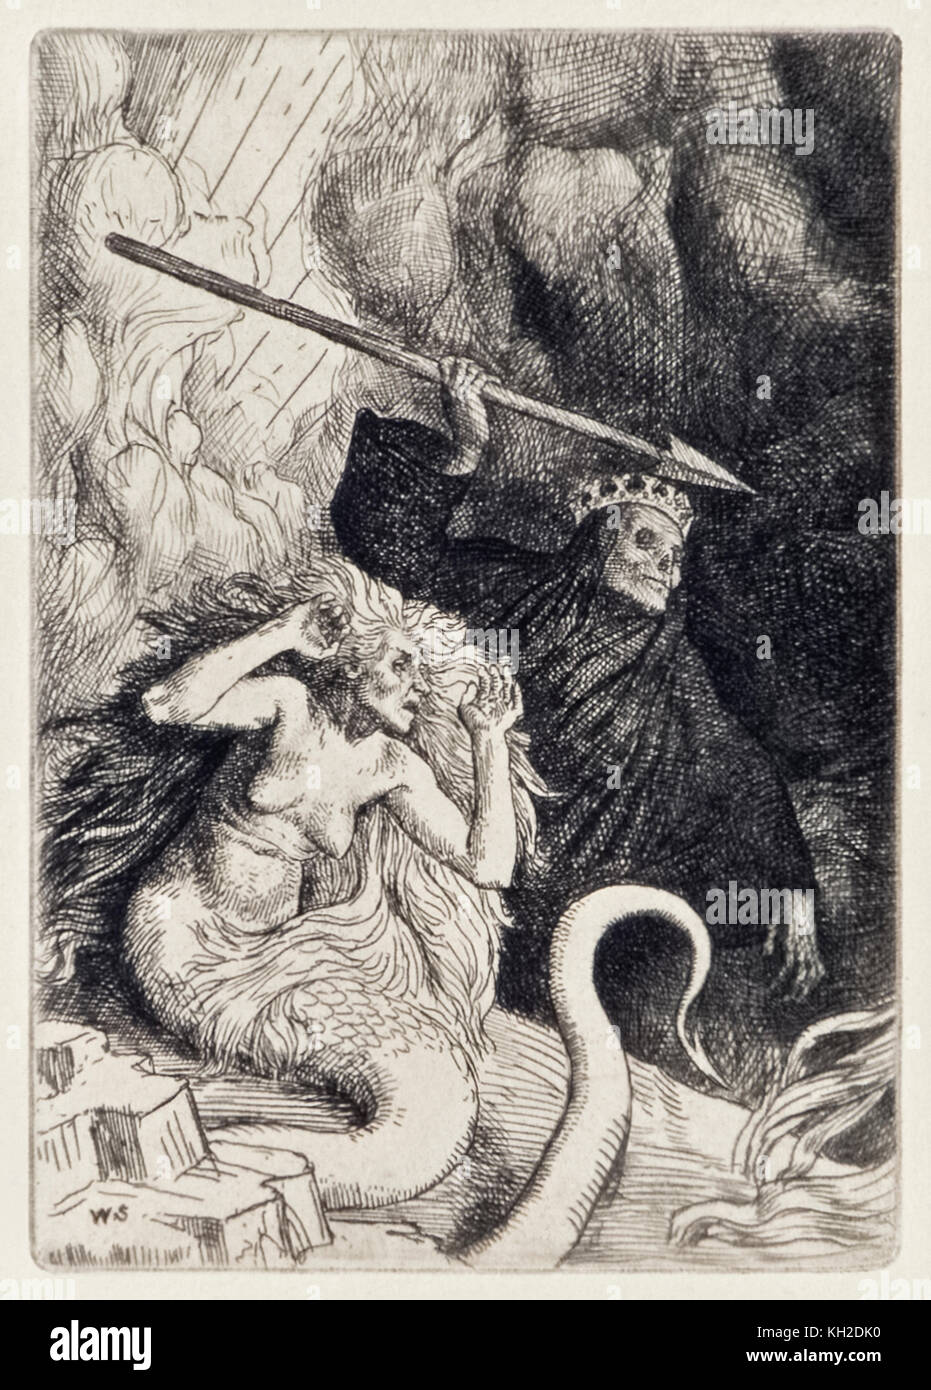 Dans "et la mort aux portes de l'enfer' de 'Paradis perdu' de John Milton (1608-1674) une série de 12 illustrations gravées par William Strang (1859-1921). Le péché et la mort venir sur terre. Voir plus d'informations ci-dessous. Banque D'Images